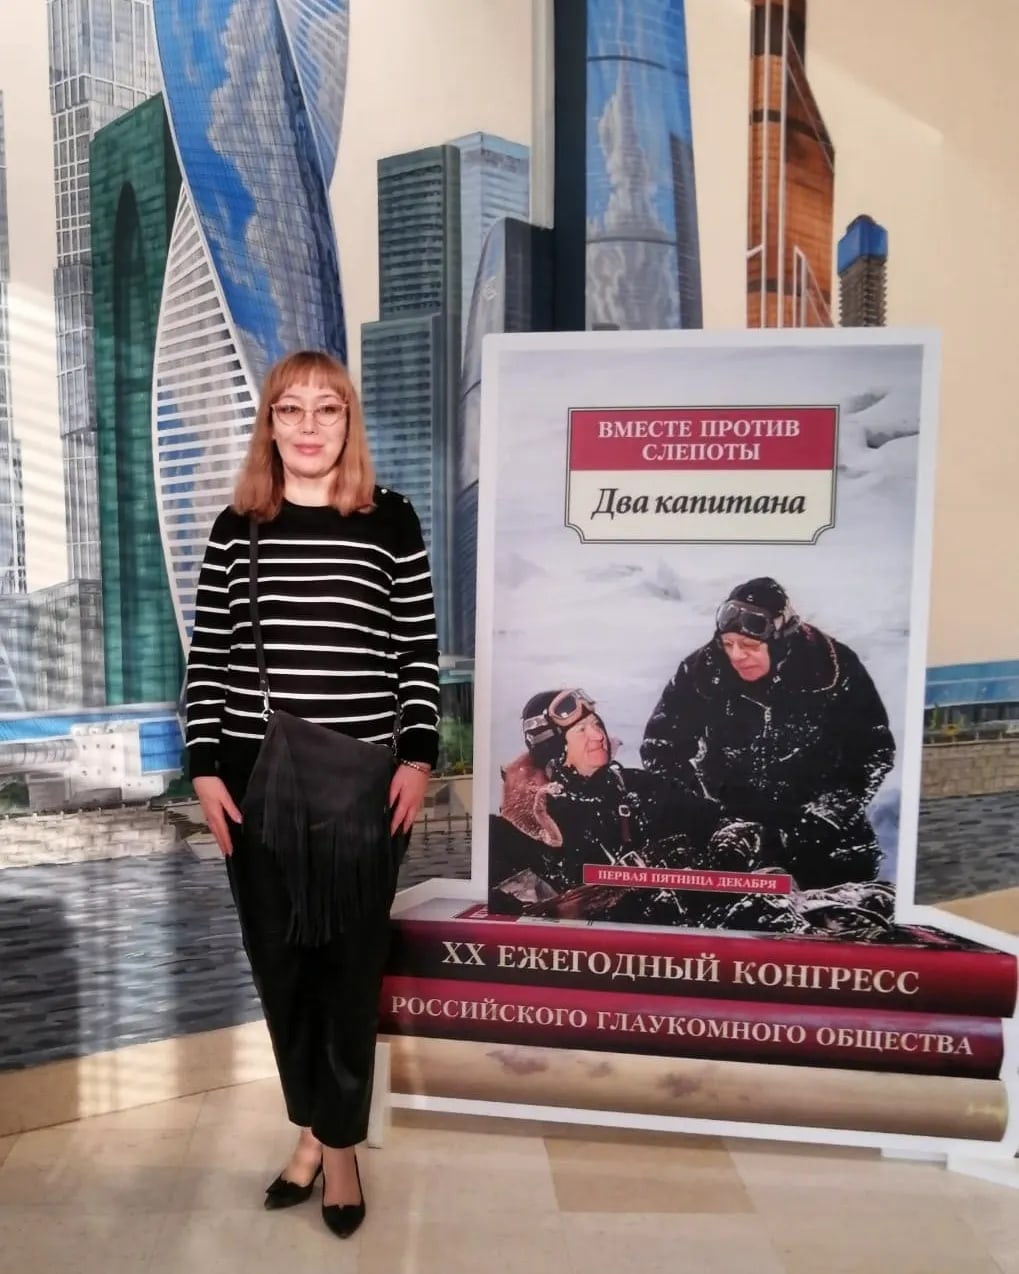 Богданова Ирина Геннадьевна стала участником XX юбилейного ежегодного конгресса Российского глаукомного общества